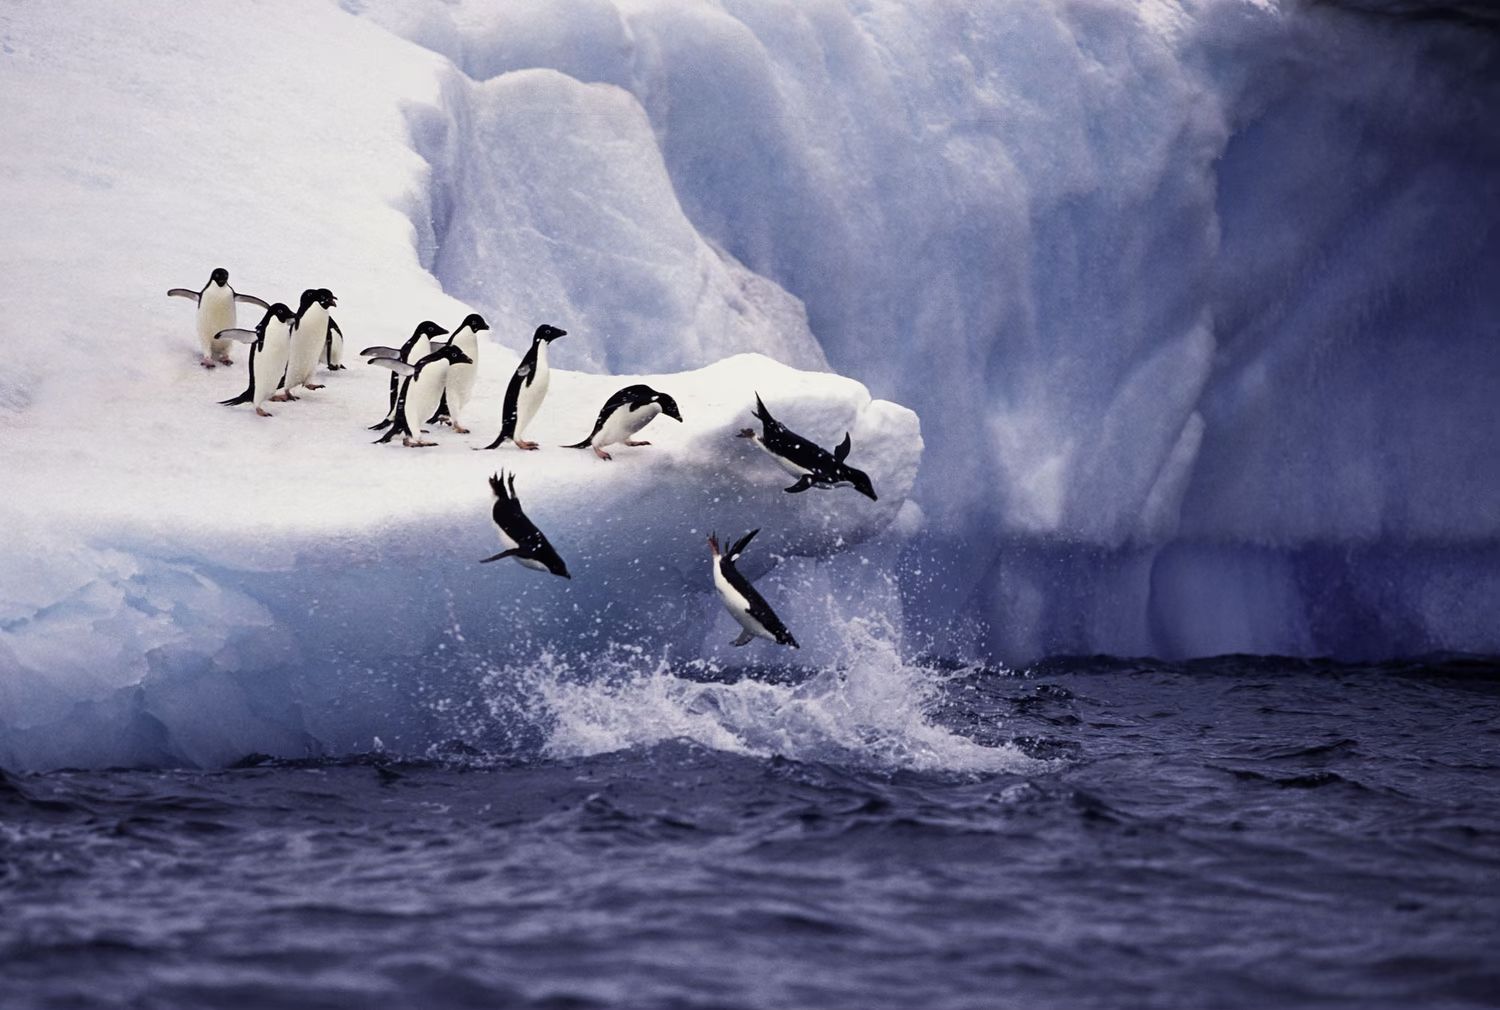 Группа пингвинов Адели прыгает с айсберга в воду в Антарктиде / ©KeithSzafranski / Getty